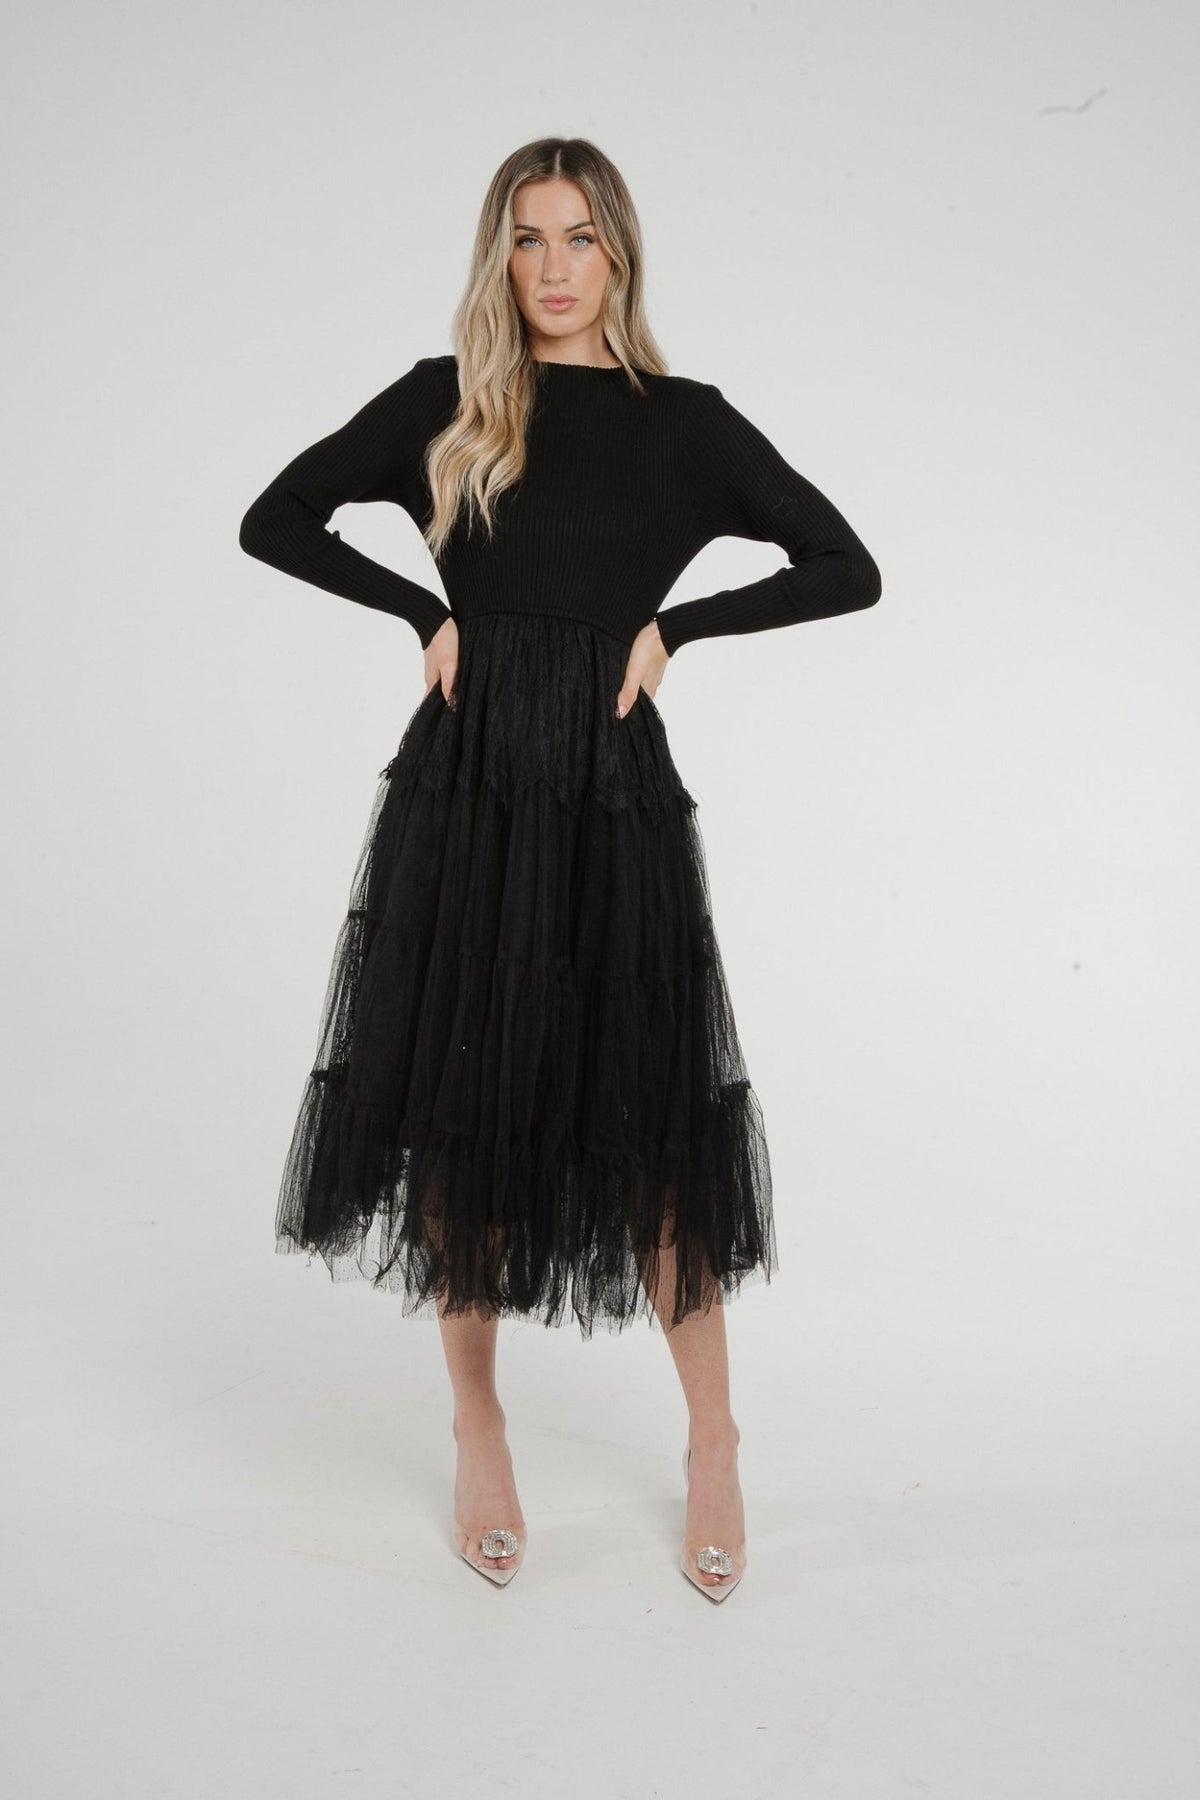 Lila Contrast Tulle Dress In Black - The Walk in Wardrobe